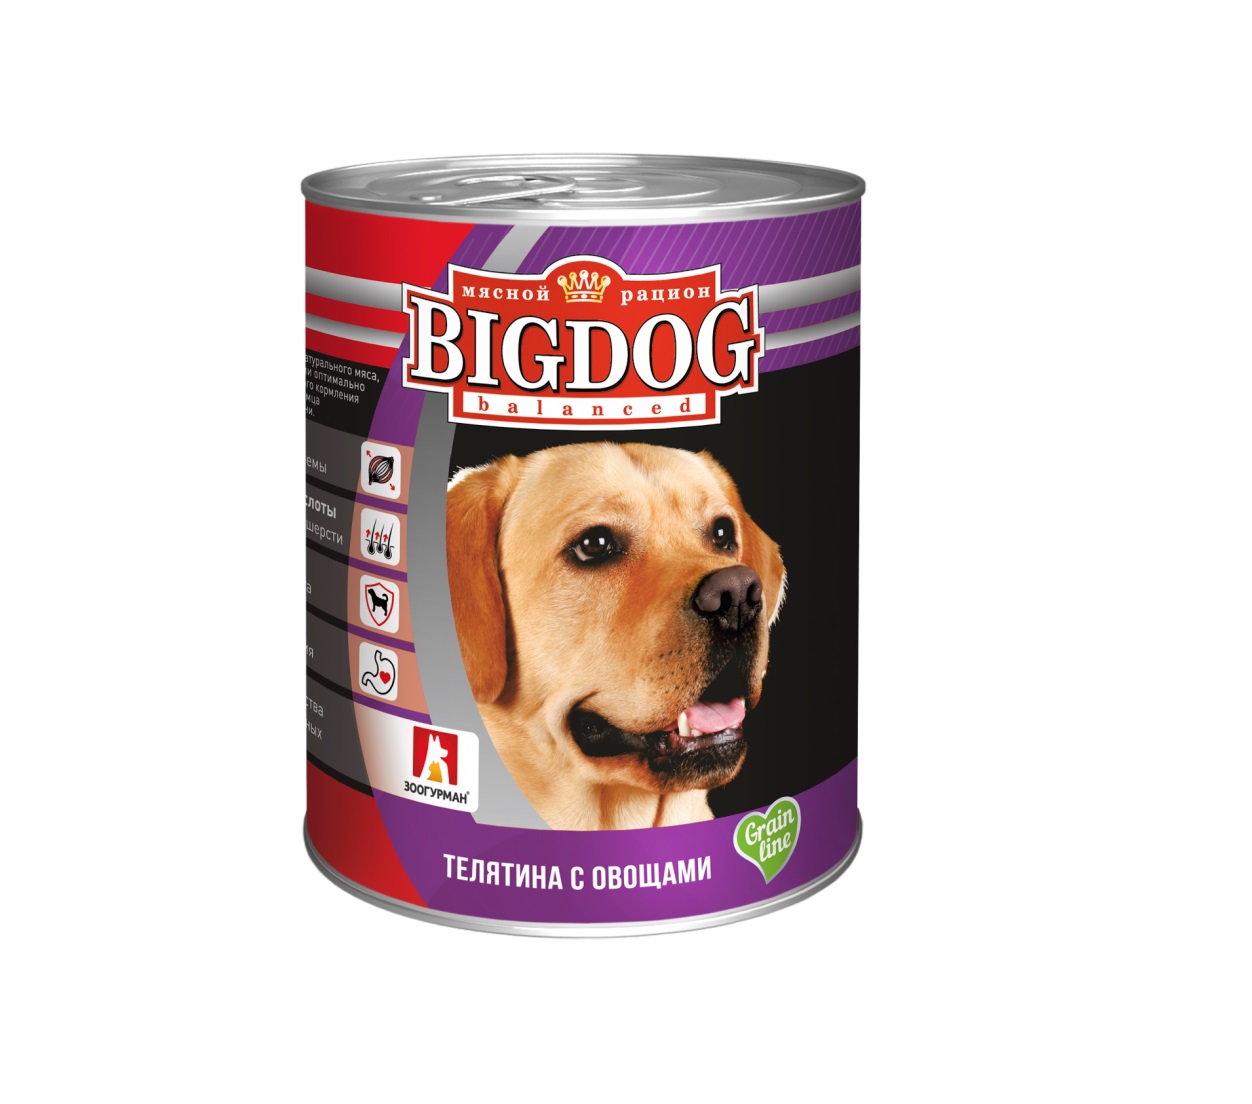 Биг Дог 850гр - Телятина/Овощи (Big Dog), Зоогурман + Подарок